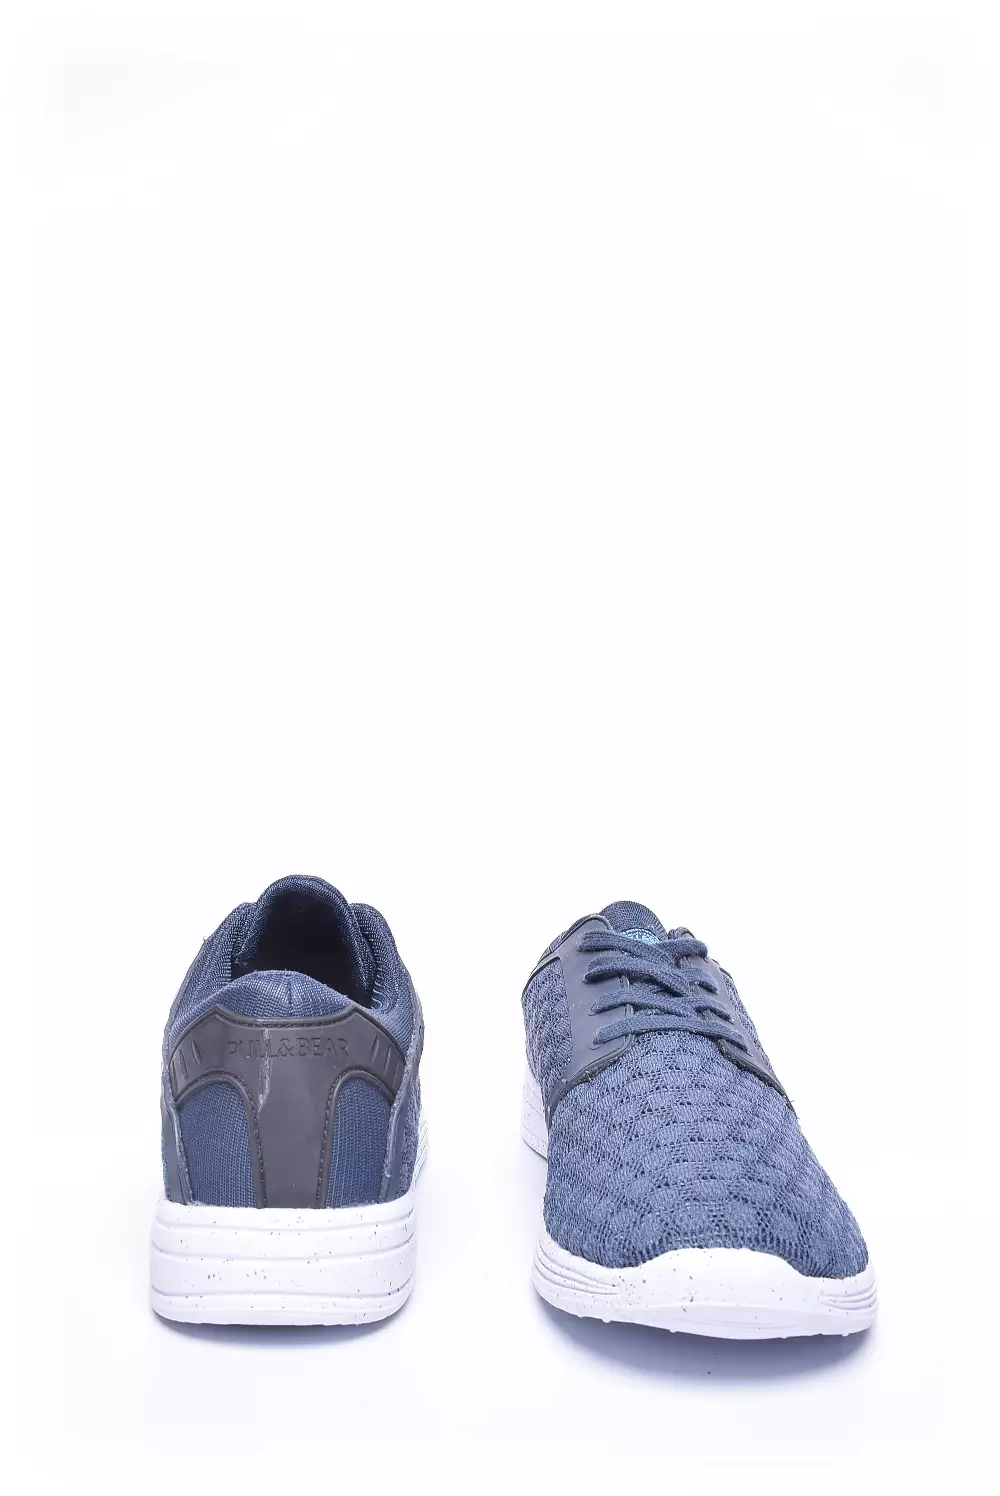 footsteps boot browser Pantofi sport barbati - Pull & Bear | Shoemix.ro